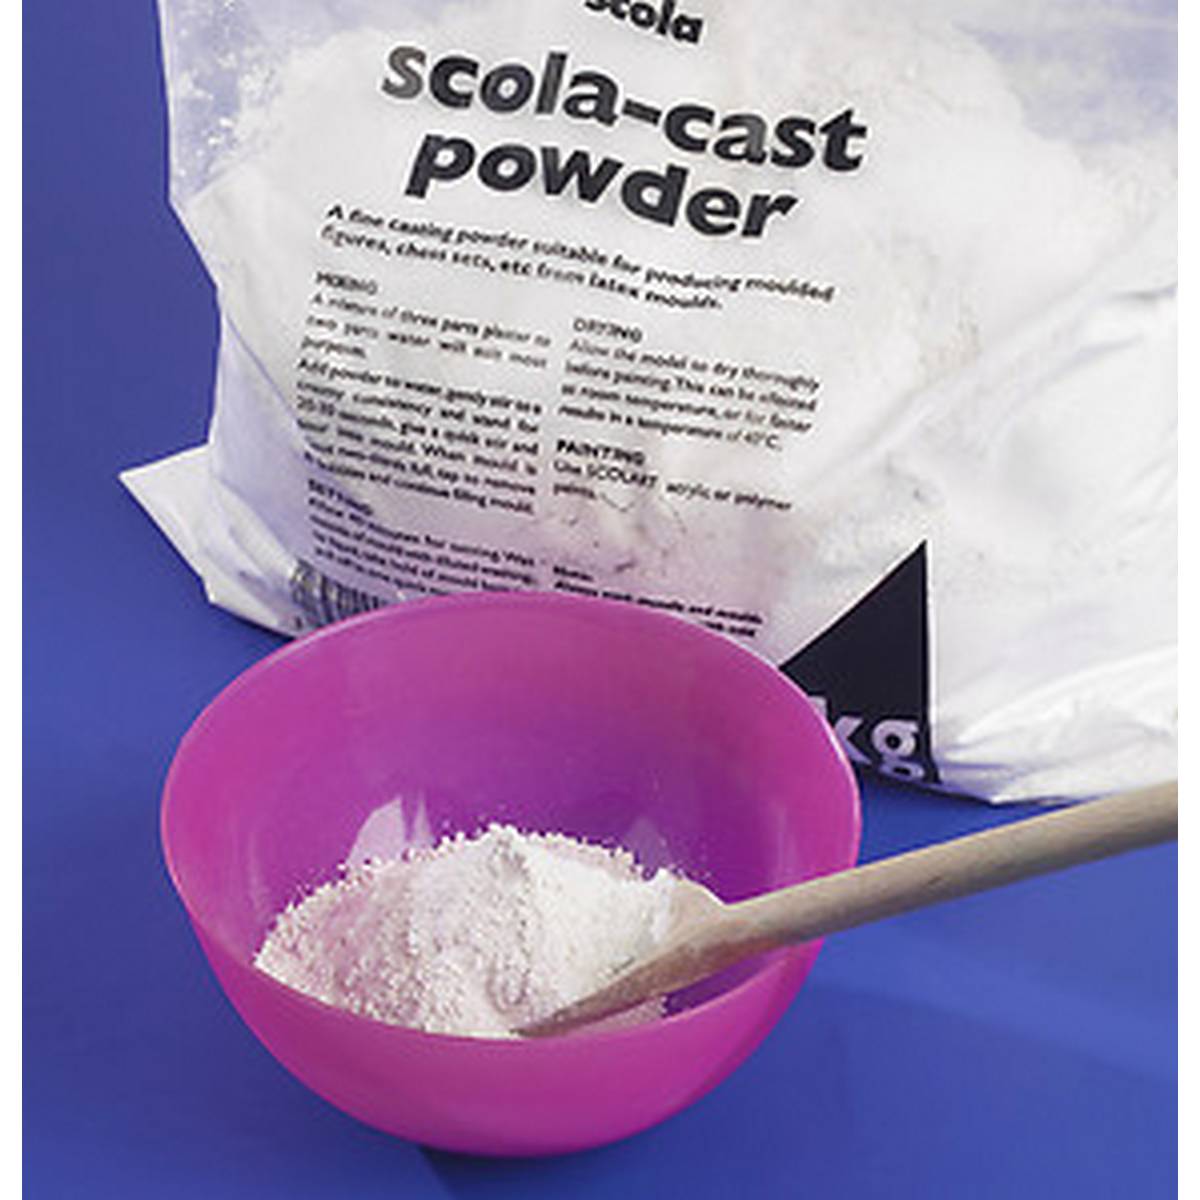 Moulding/Casting Powder 3kg Bag